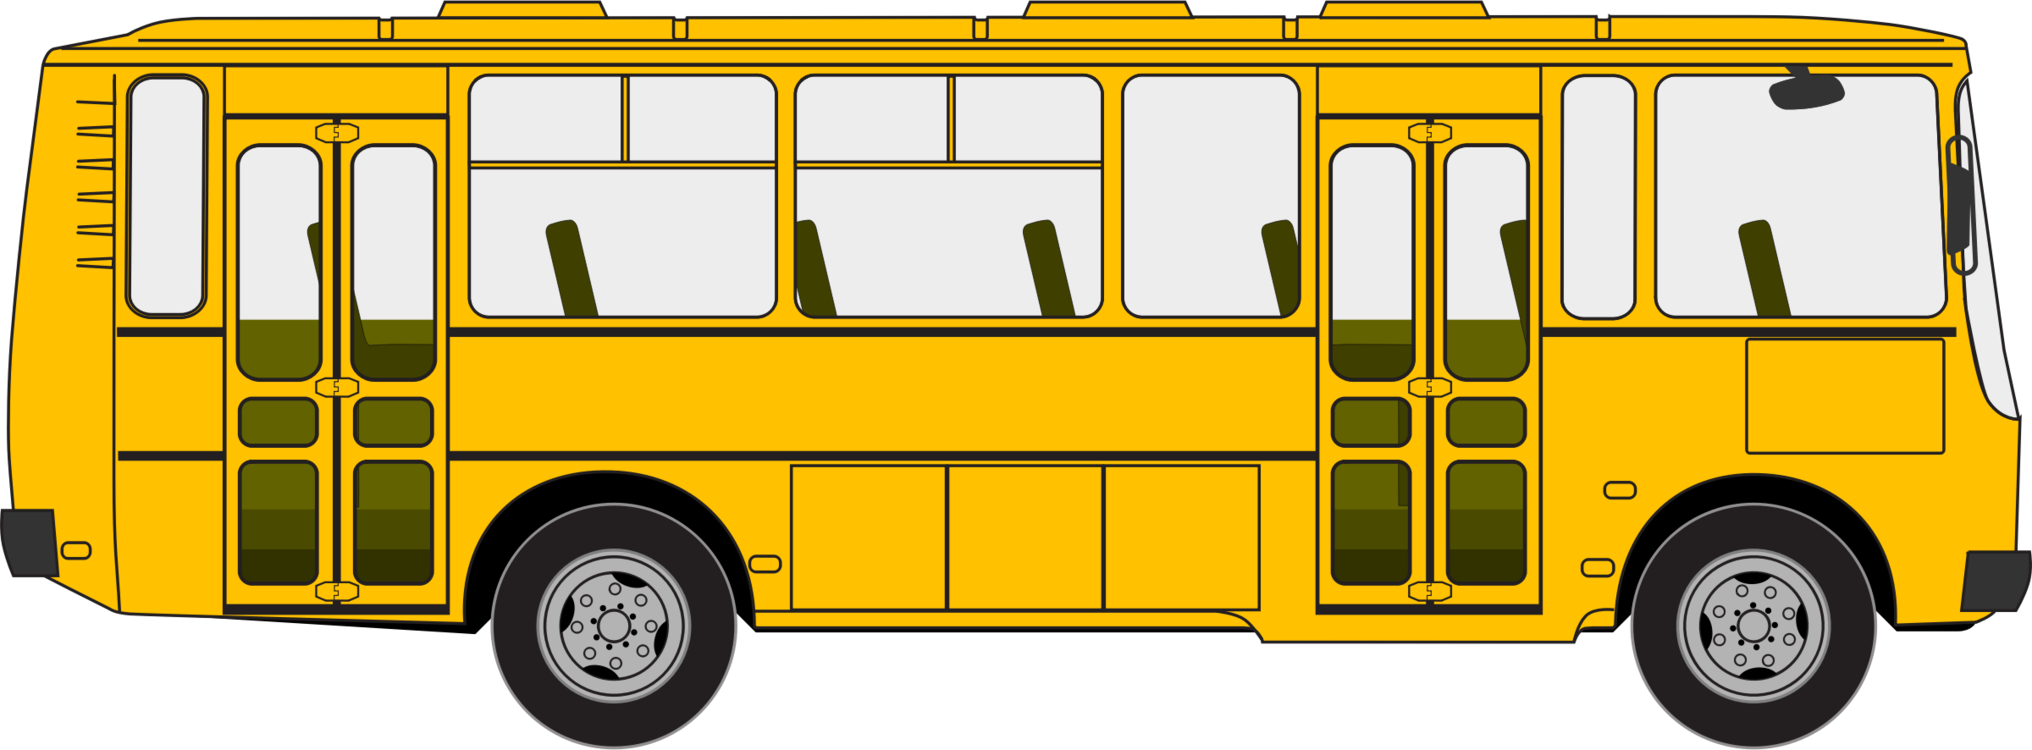 Детский автобус для детей. ПАЗ школьный автобус сбоку. Автобус для детского сада. Автобус мультяшный. Изображение автобуса для детей.